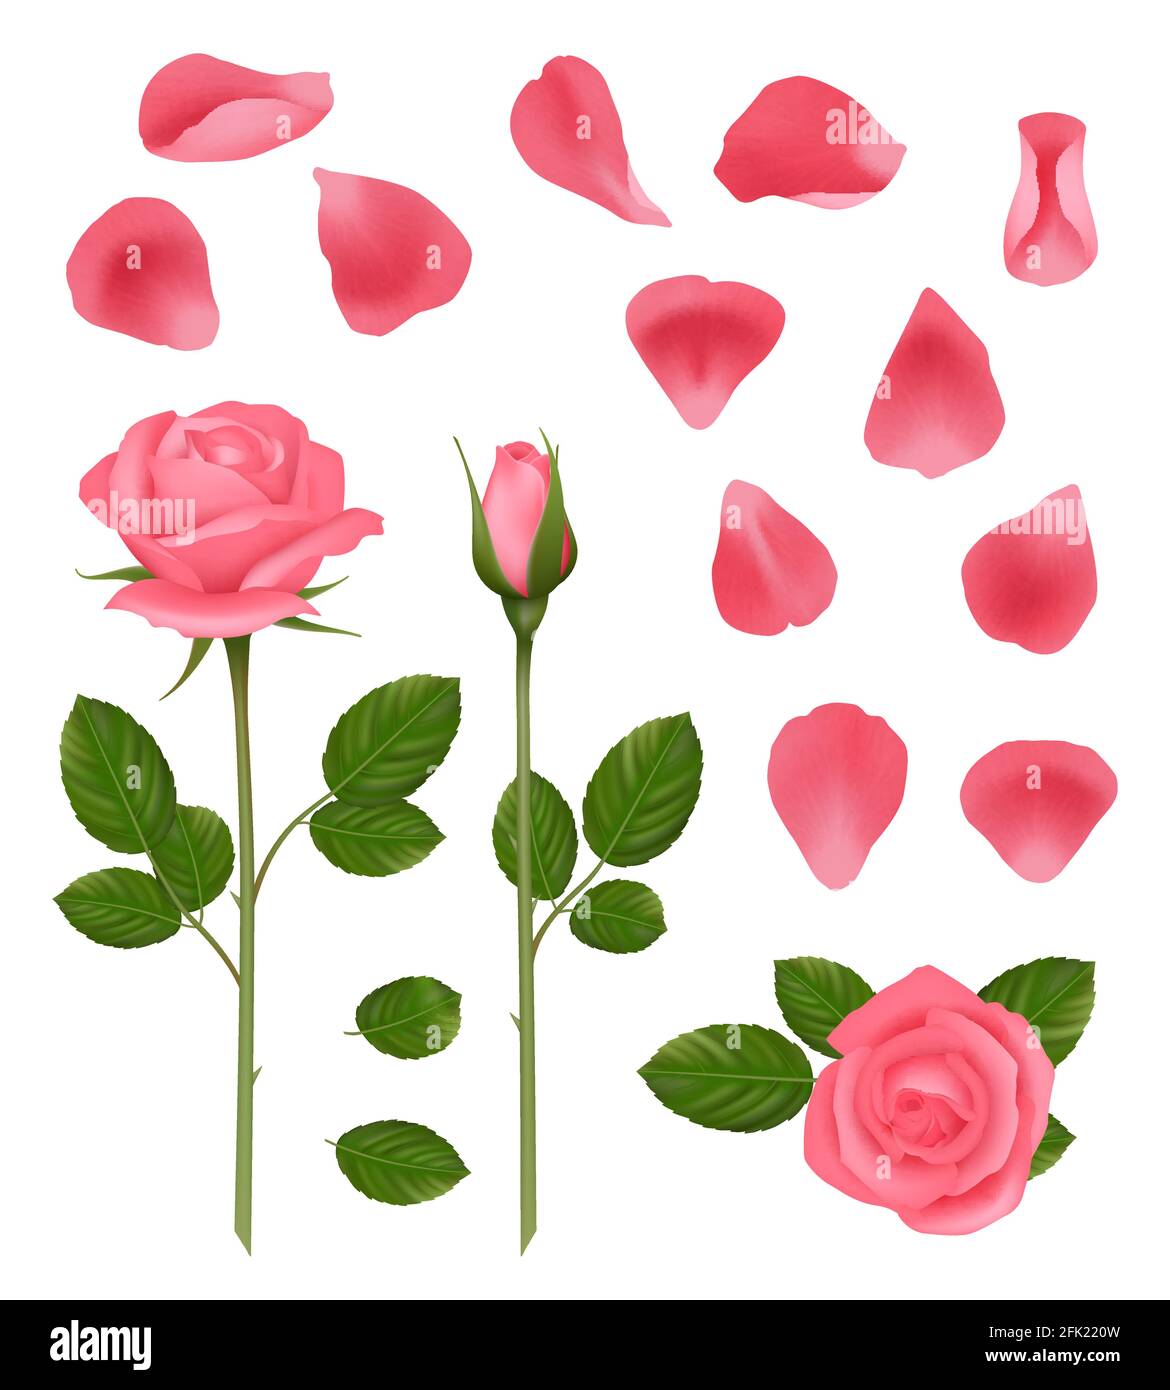 Rosa Rosen. Knospen und Blütenblätter von schönen romantischen Hochzeit Pflanzen Rosen mit Blättern Vektor realistische Bilder gesetzt Stock Vektor